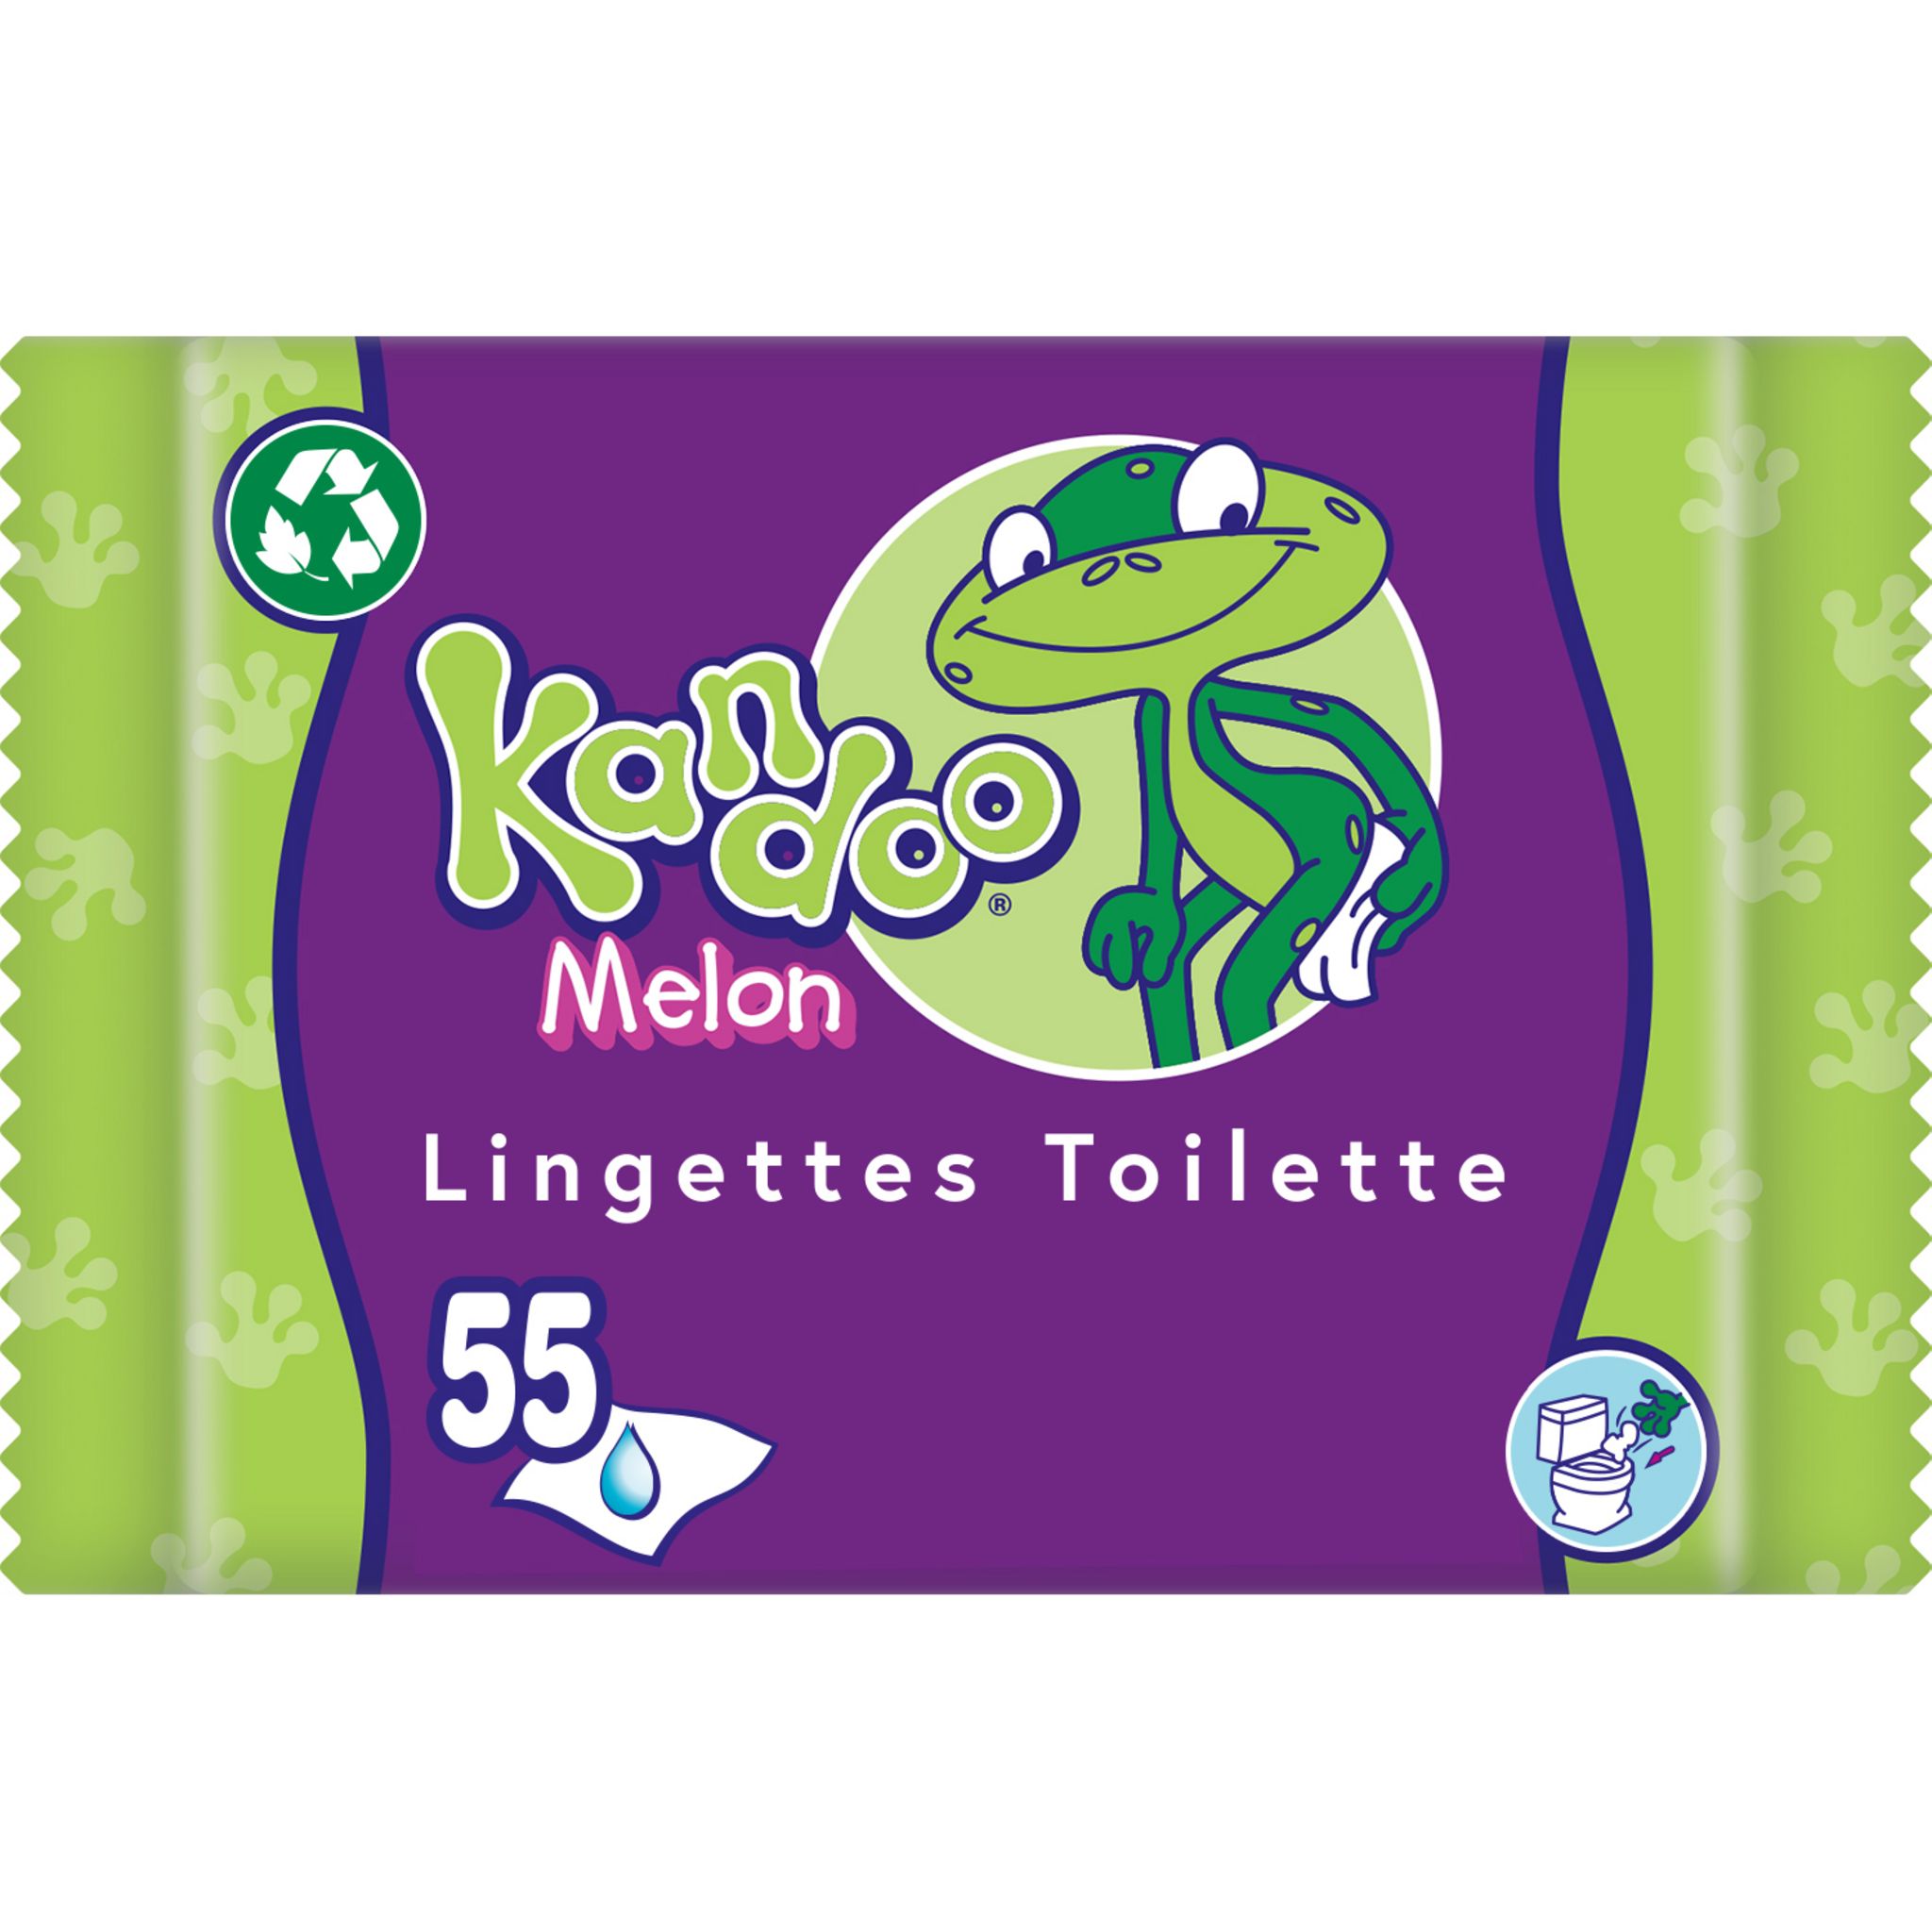 KLEENEX Lingettes papier toilette humide blanc fresh 42 lingettes pas cher  